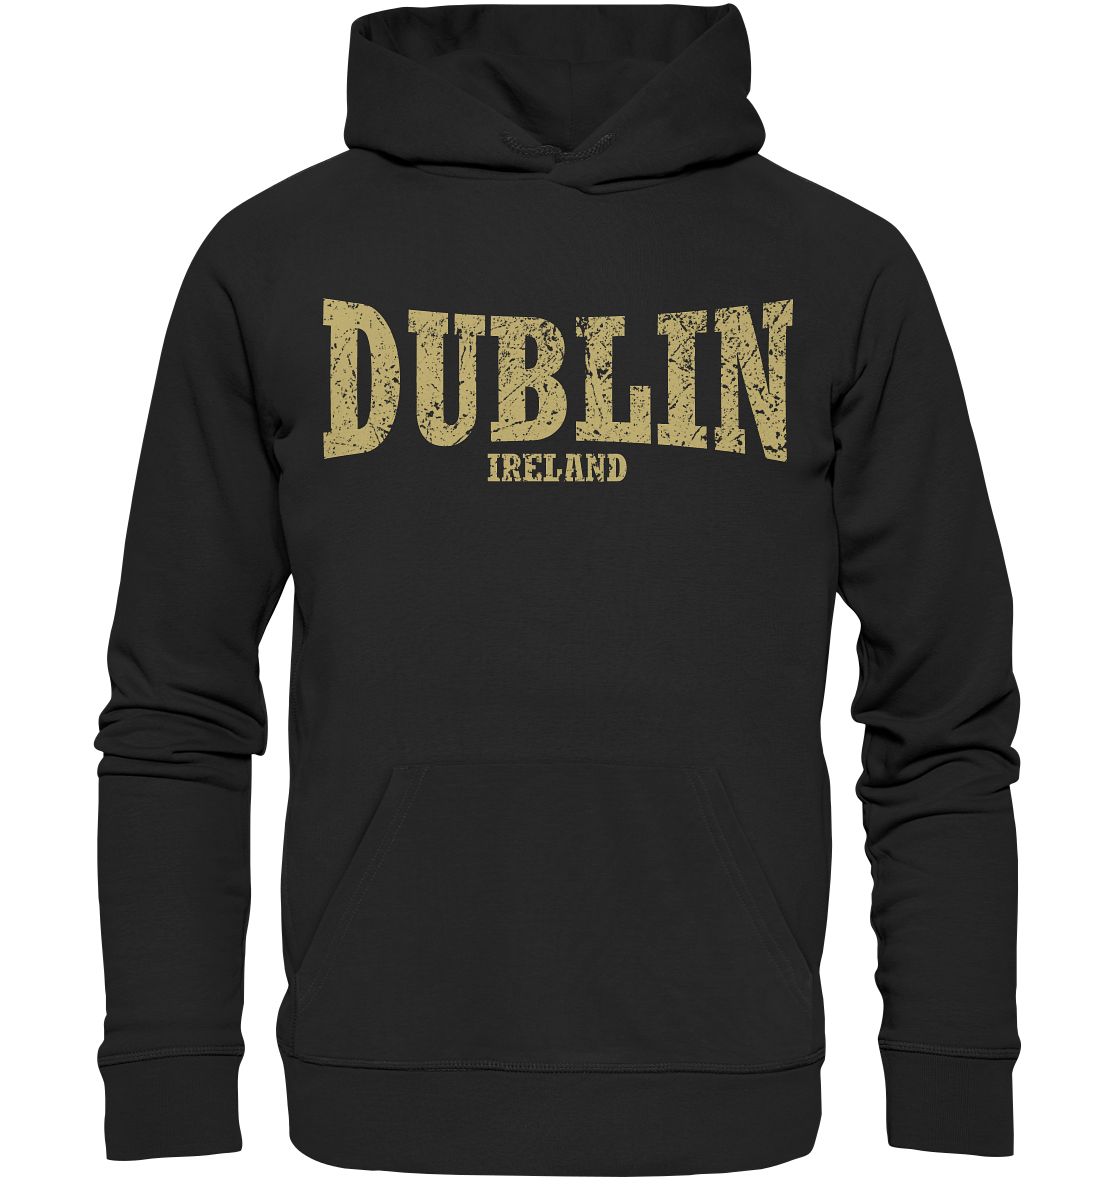 Dublin "Ireland" - Premium Unisex Hoodie